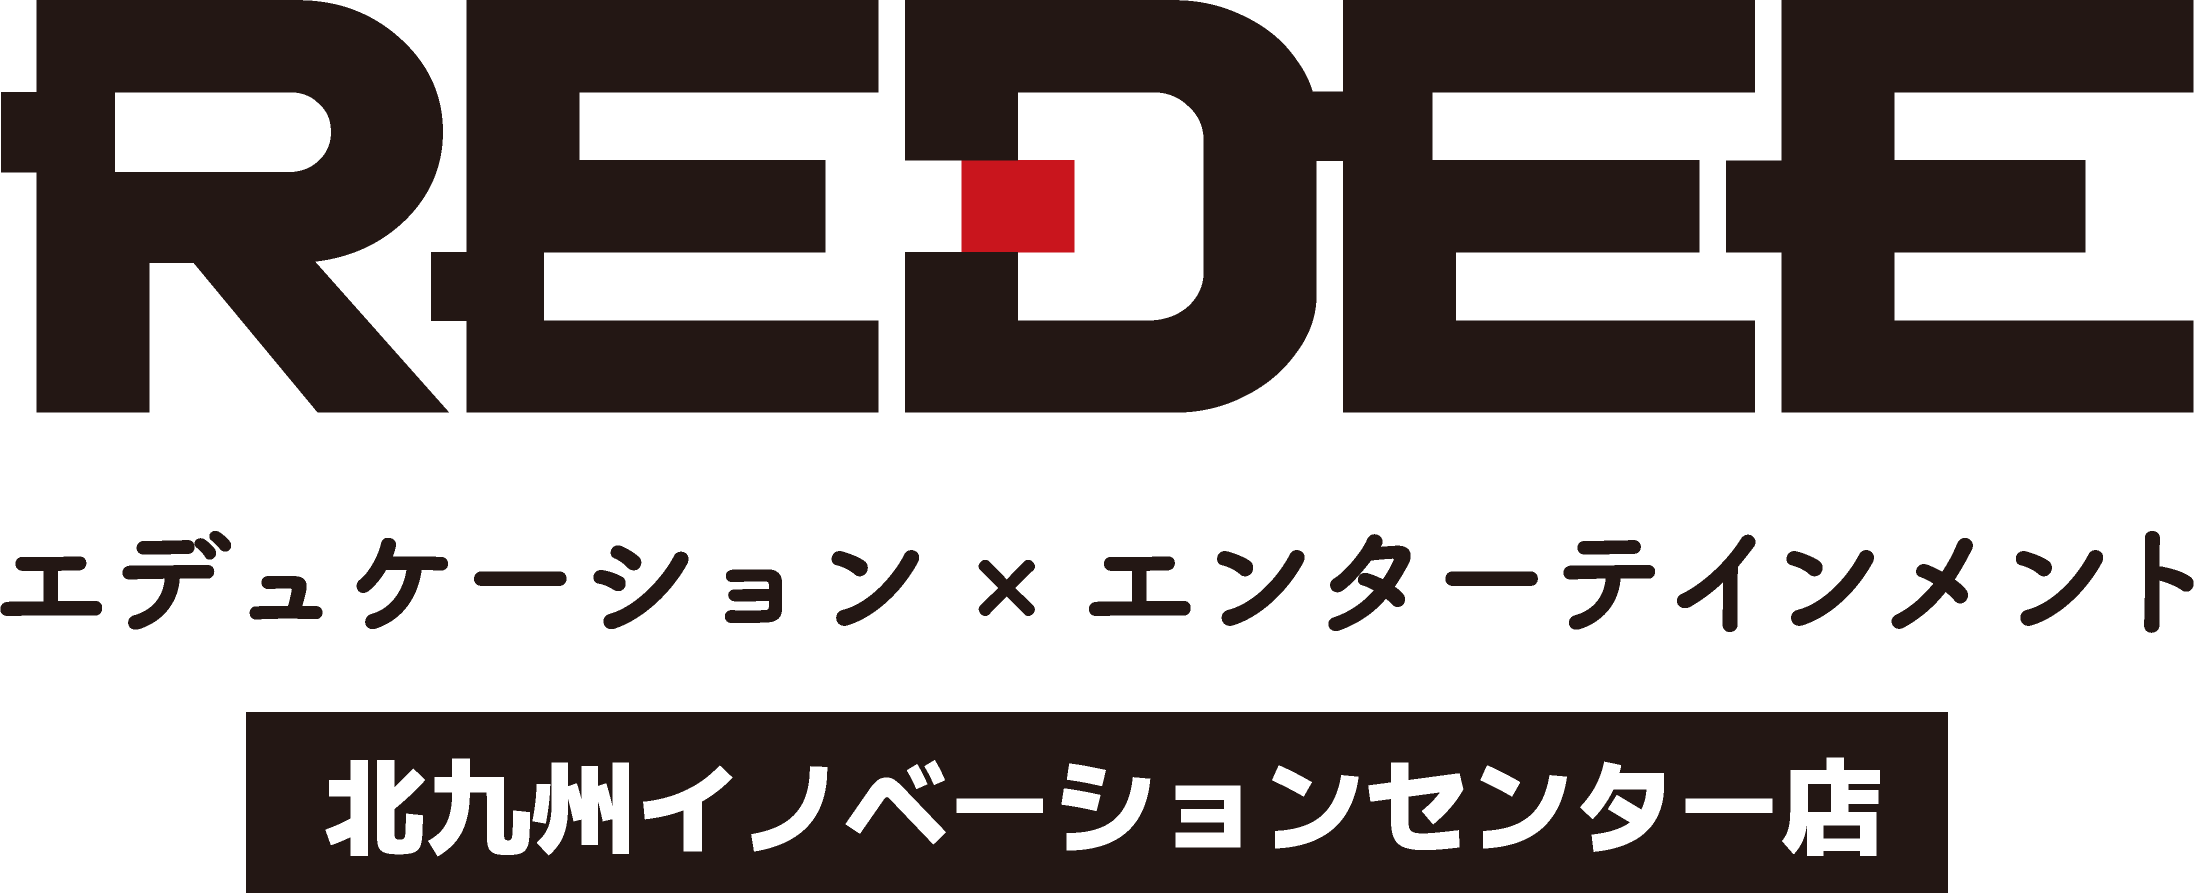 施設貸出｜デジタル複合施設「REDEE 北九州イノベーションセンター店」